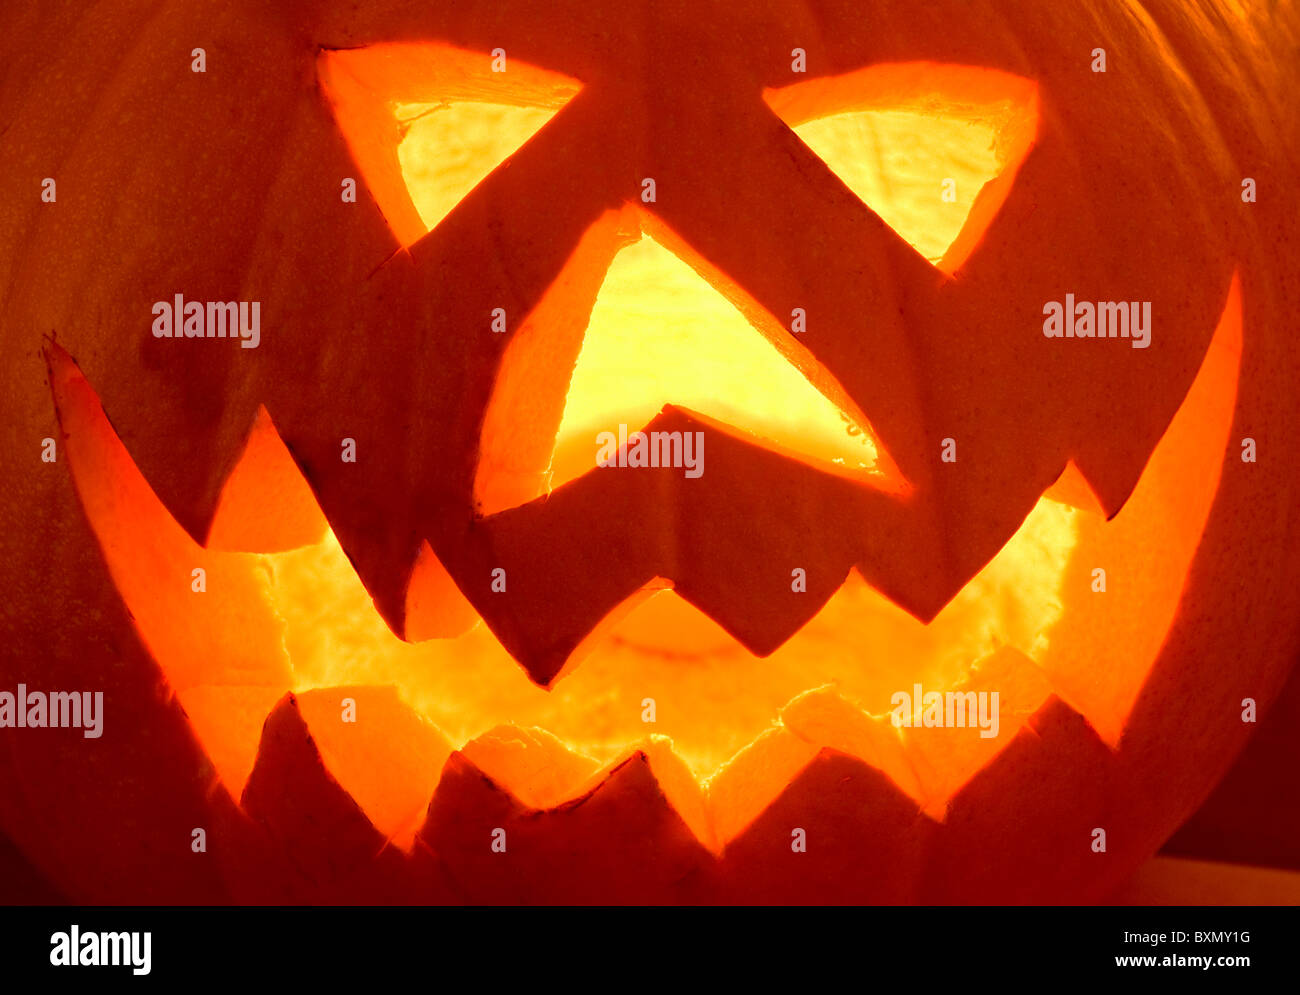 Illuminated Scary Halloween Pumpkin Face Stock Photo